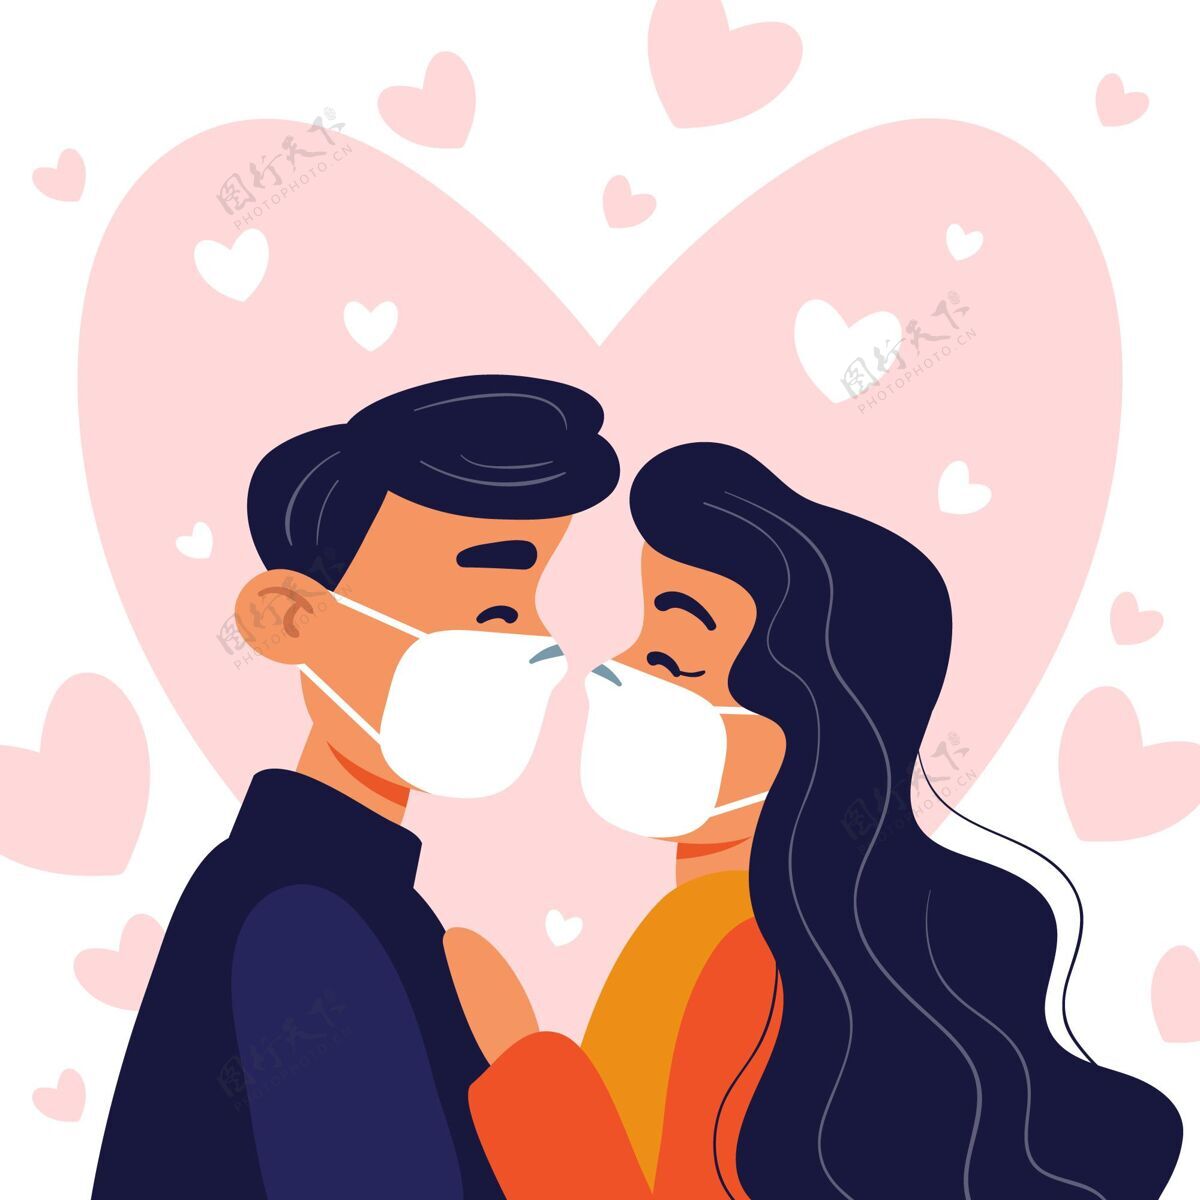 接吻手绘情侣亲吻与covid面具插图冠状病毒面膜情感感情